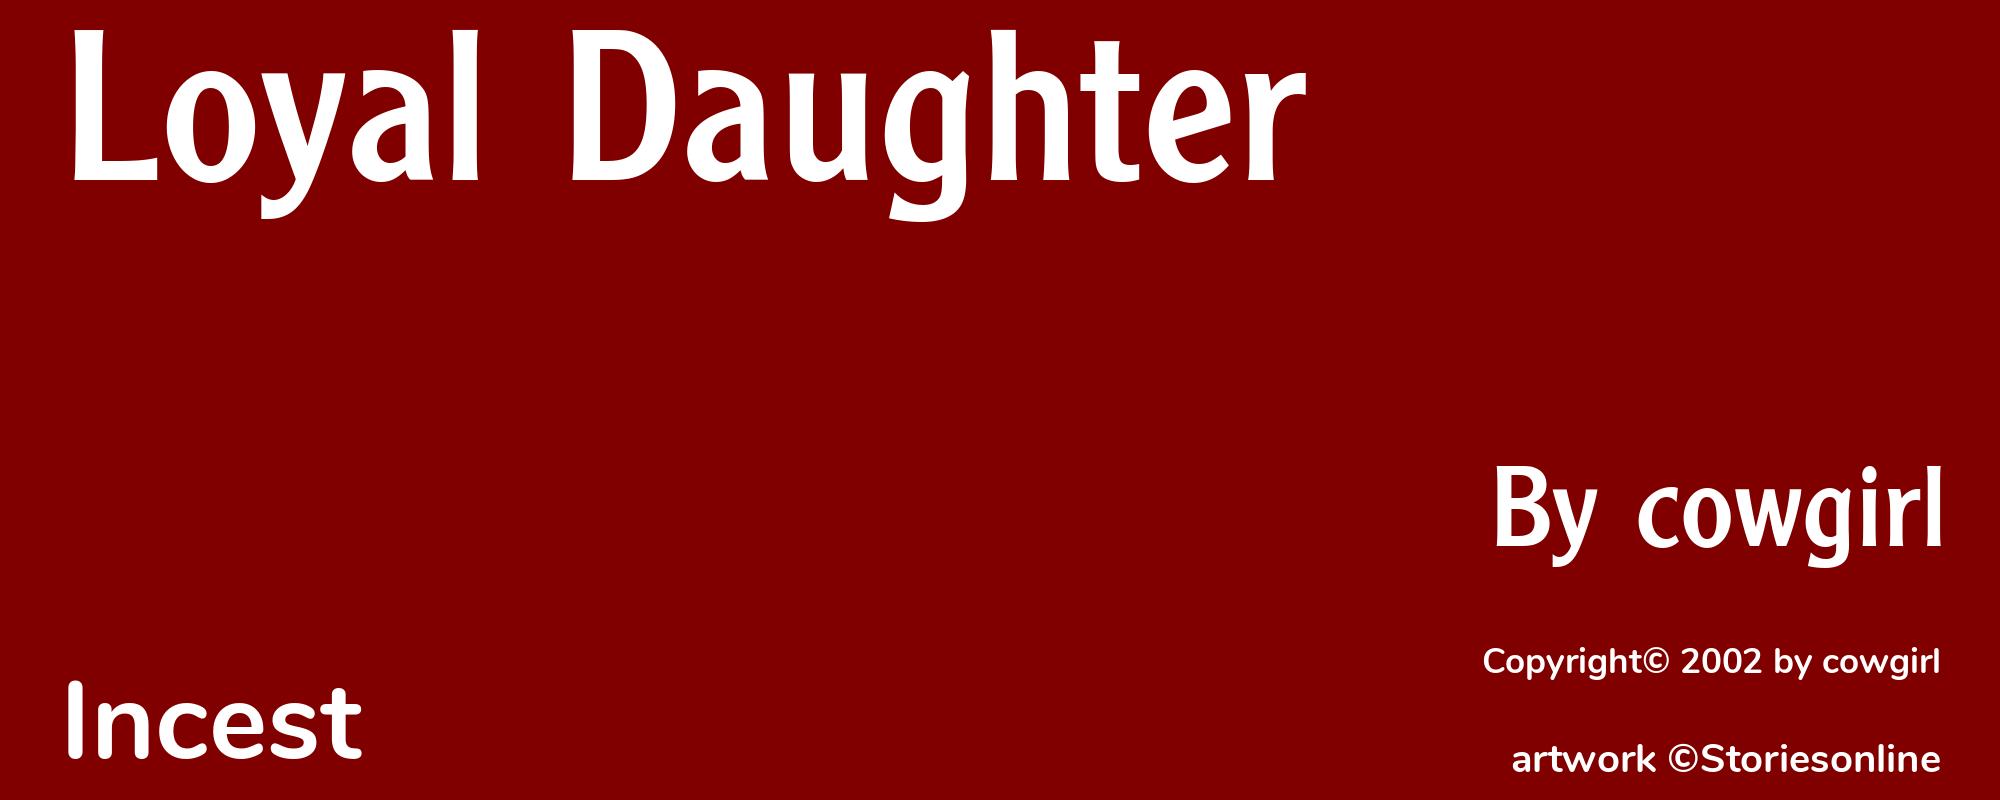 Loyal Daughter - Cover